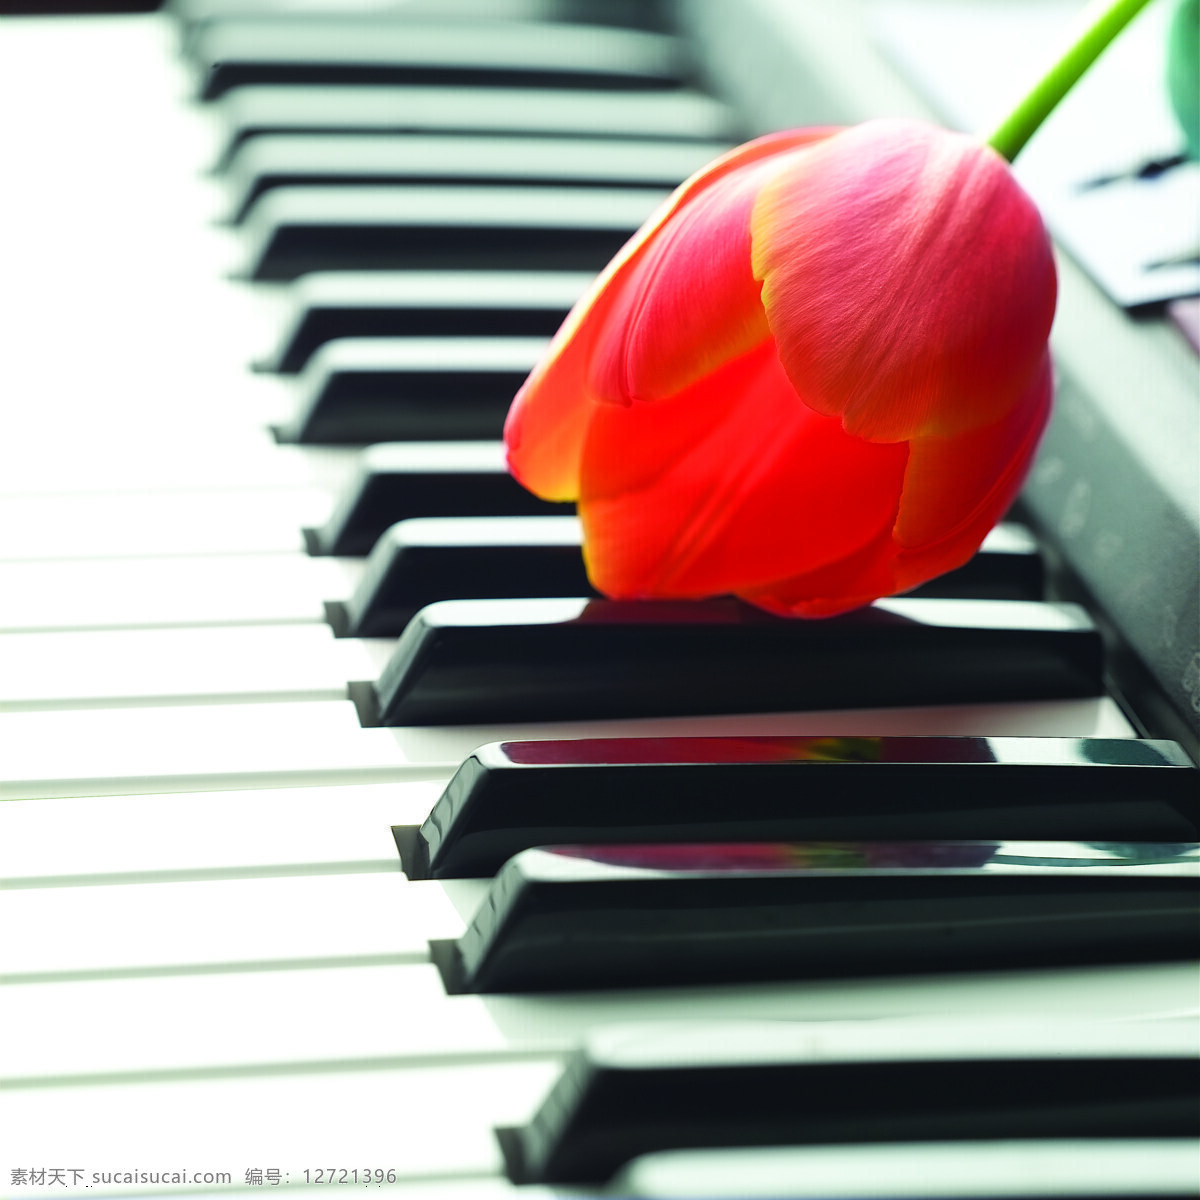 钢琴 上 郁金香 特写 音乐艺术 音乐 乐器 琴键 鲜花 花朵 静物 局部 摄影图片 高清图片 影音娱乐 生活百科